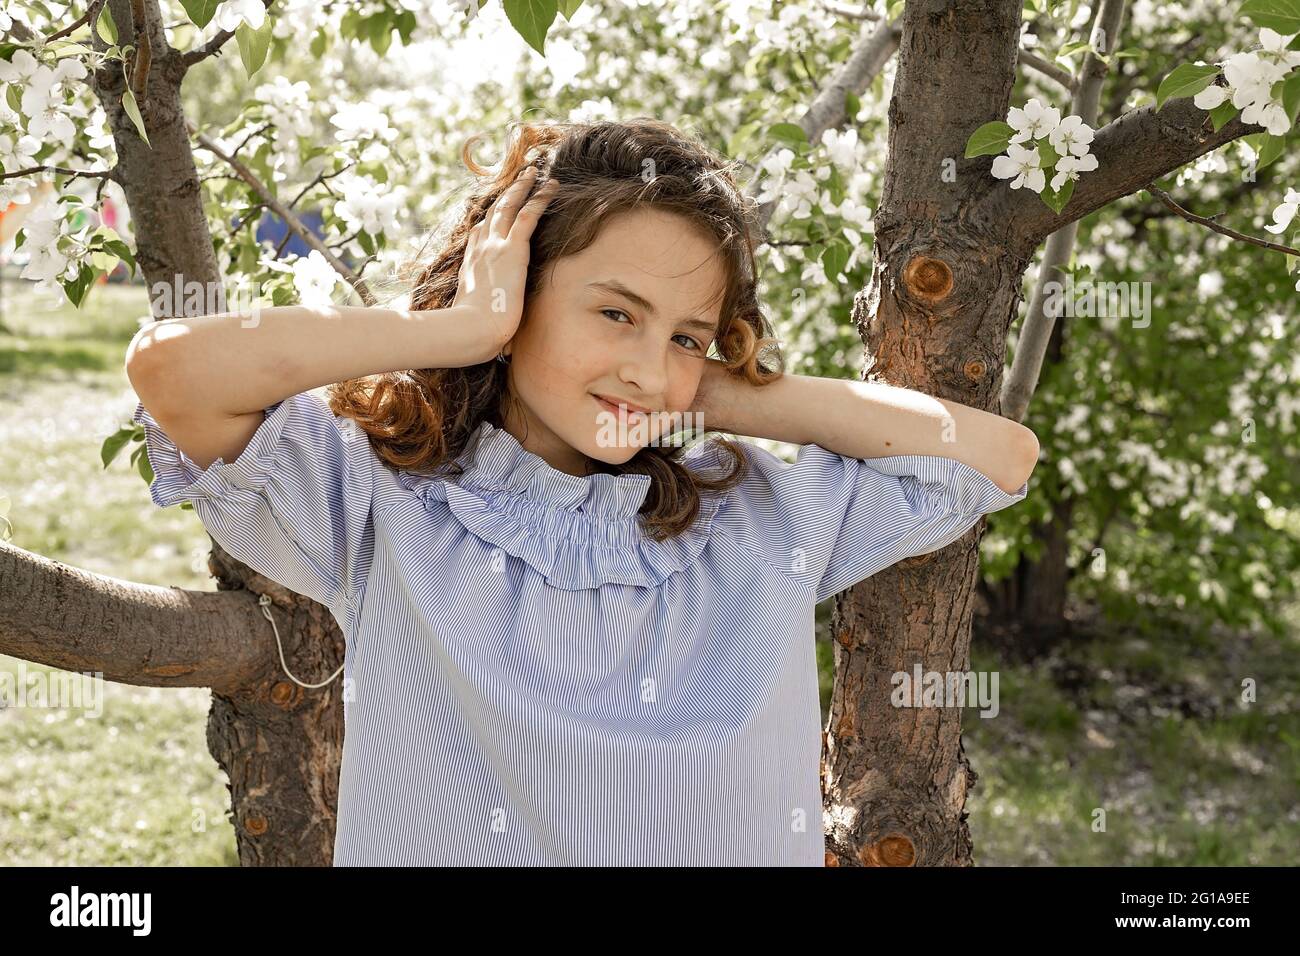 Lifestyle-Foto von einem glücklichen Kind. Nettes hübsches lächelndes Brünette Mädchen in einem blühenden Garten. Das Mädchen richtet ihre flatternden Haare im Wind und im Klo auf Stockfoto